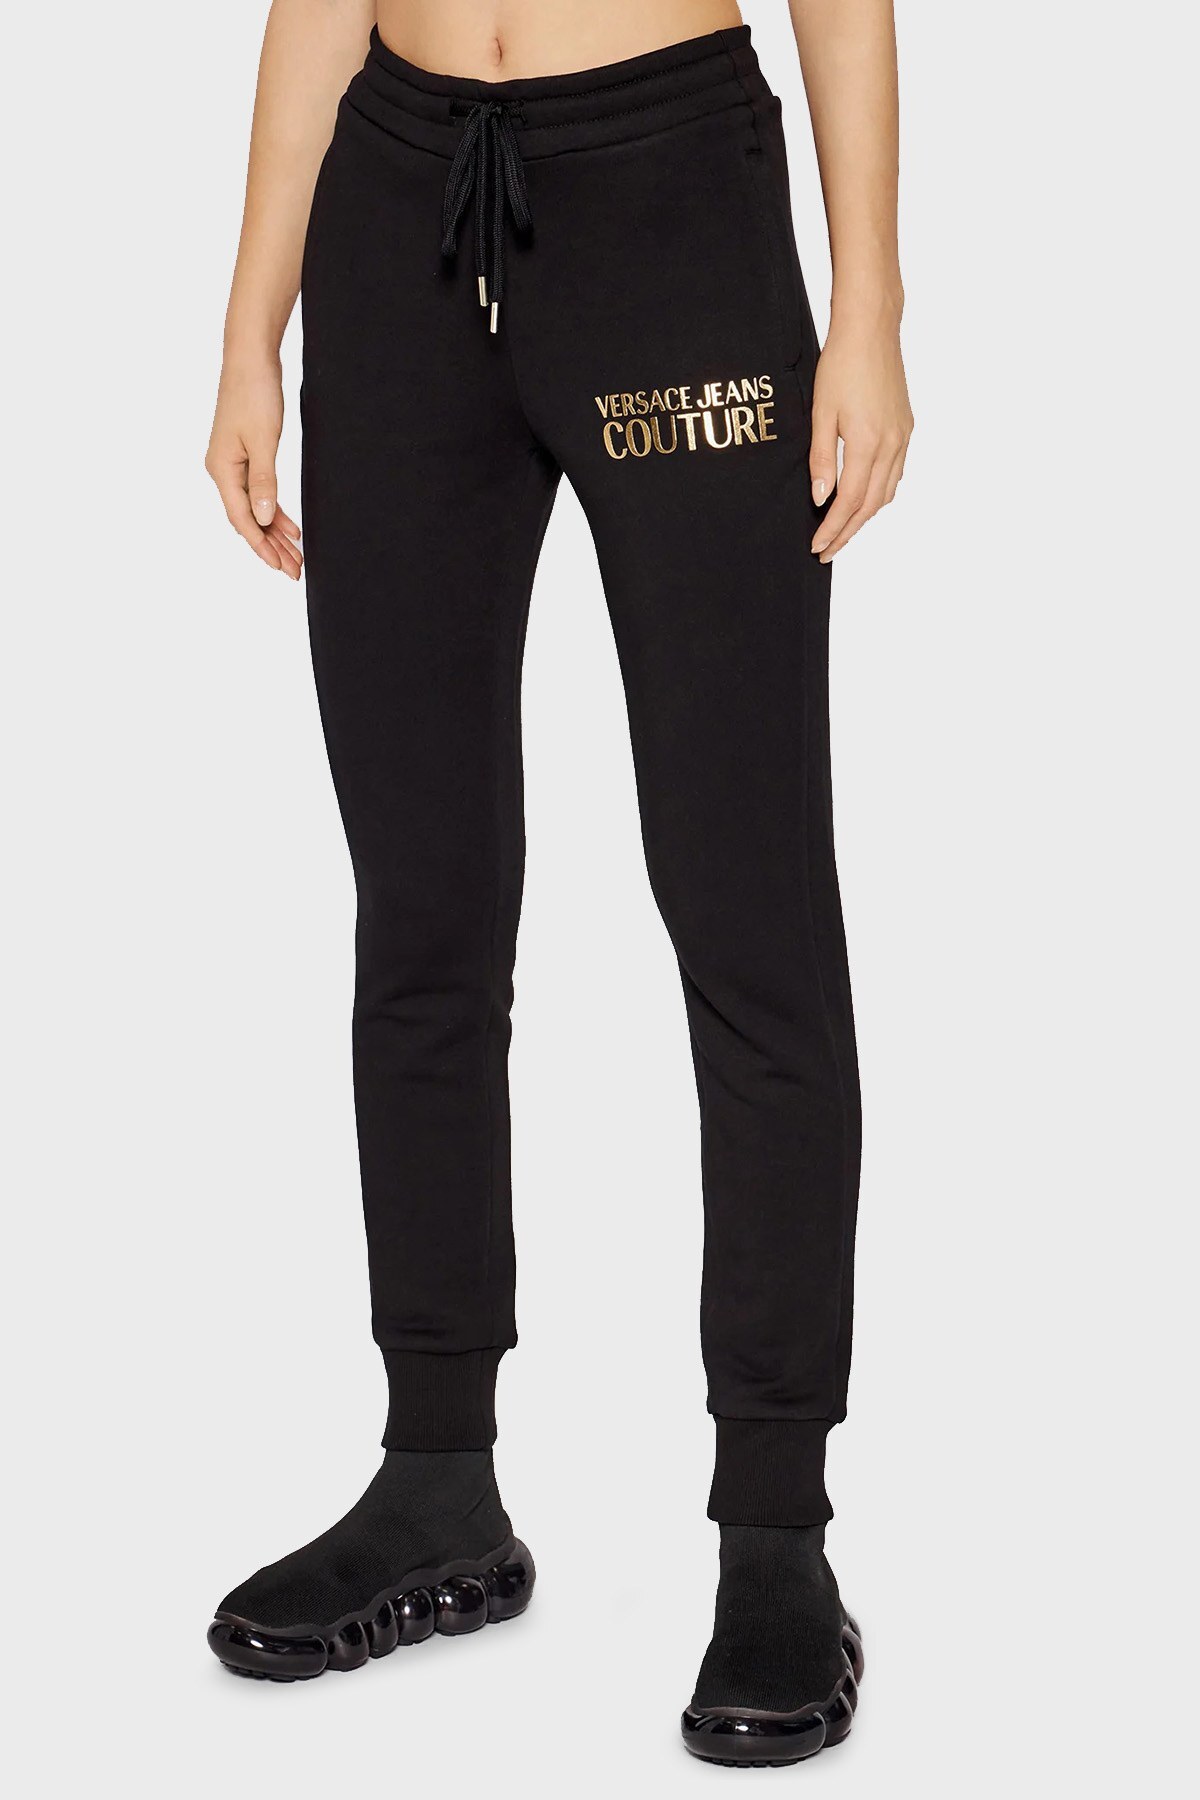 Versace Jeans Couture Regular Fit Pamuklu Jogger Bayan Pantolon 71HAAT04 CF00T G89 SİYAH